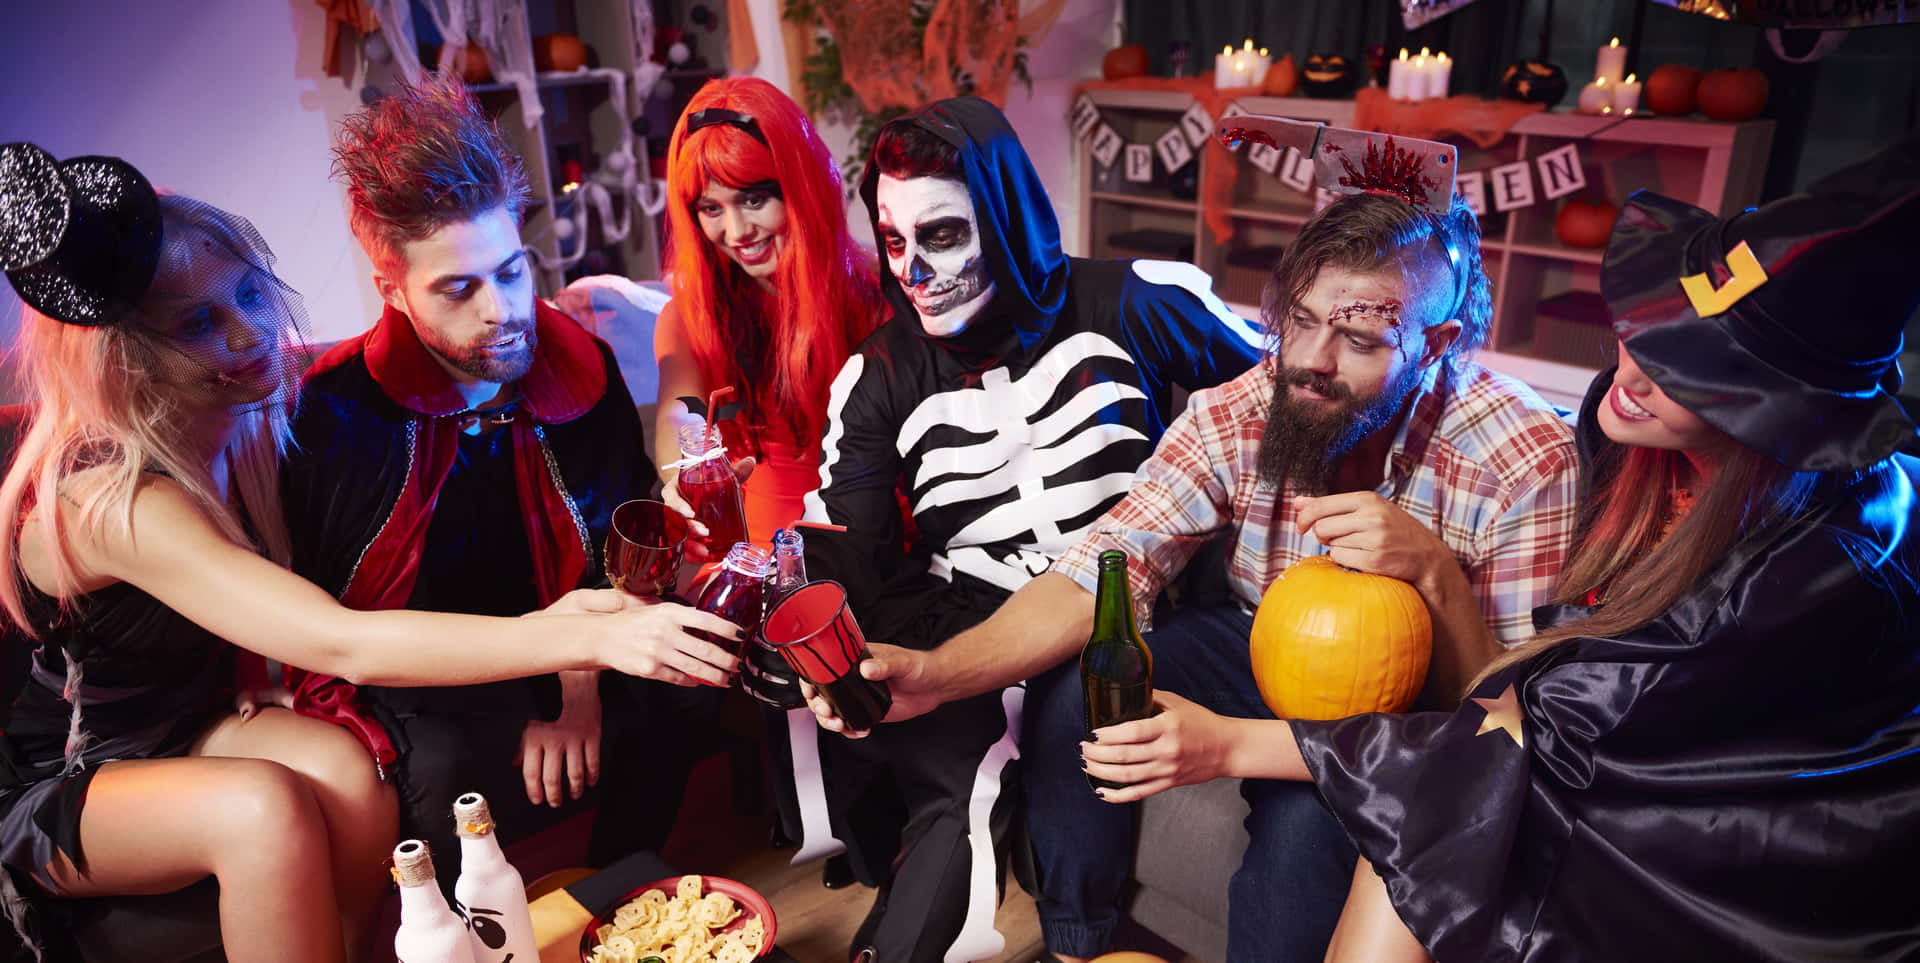 Halloweenfreunde-party-bild